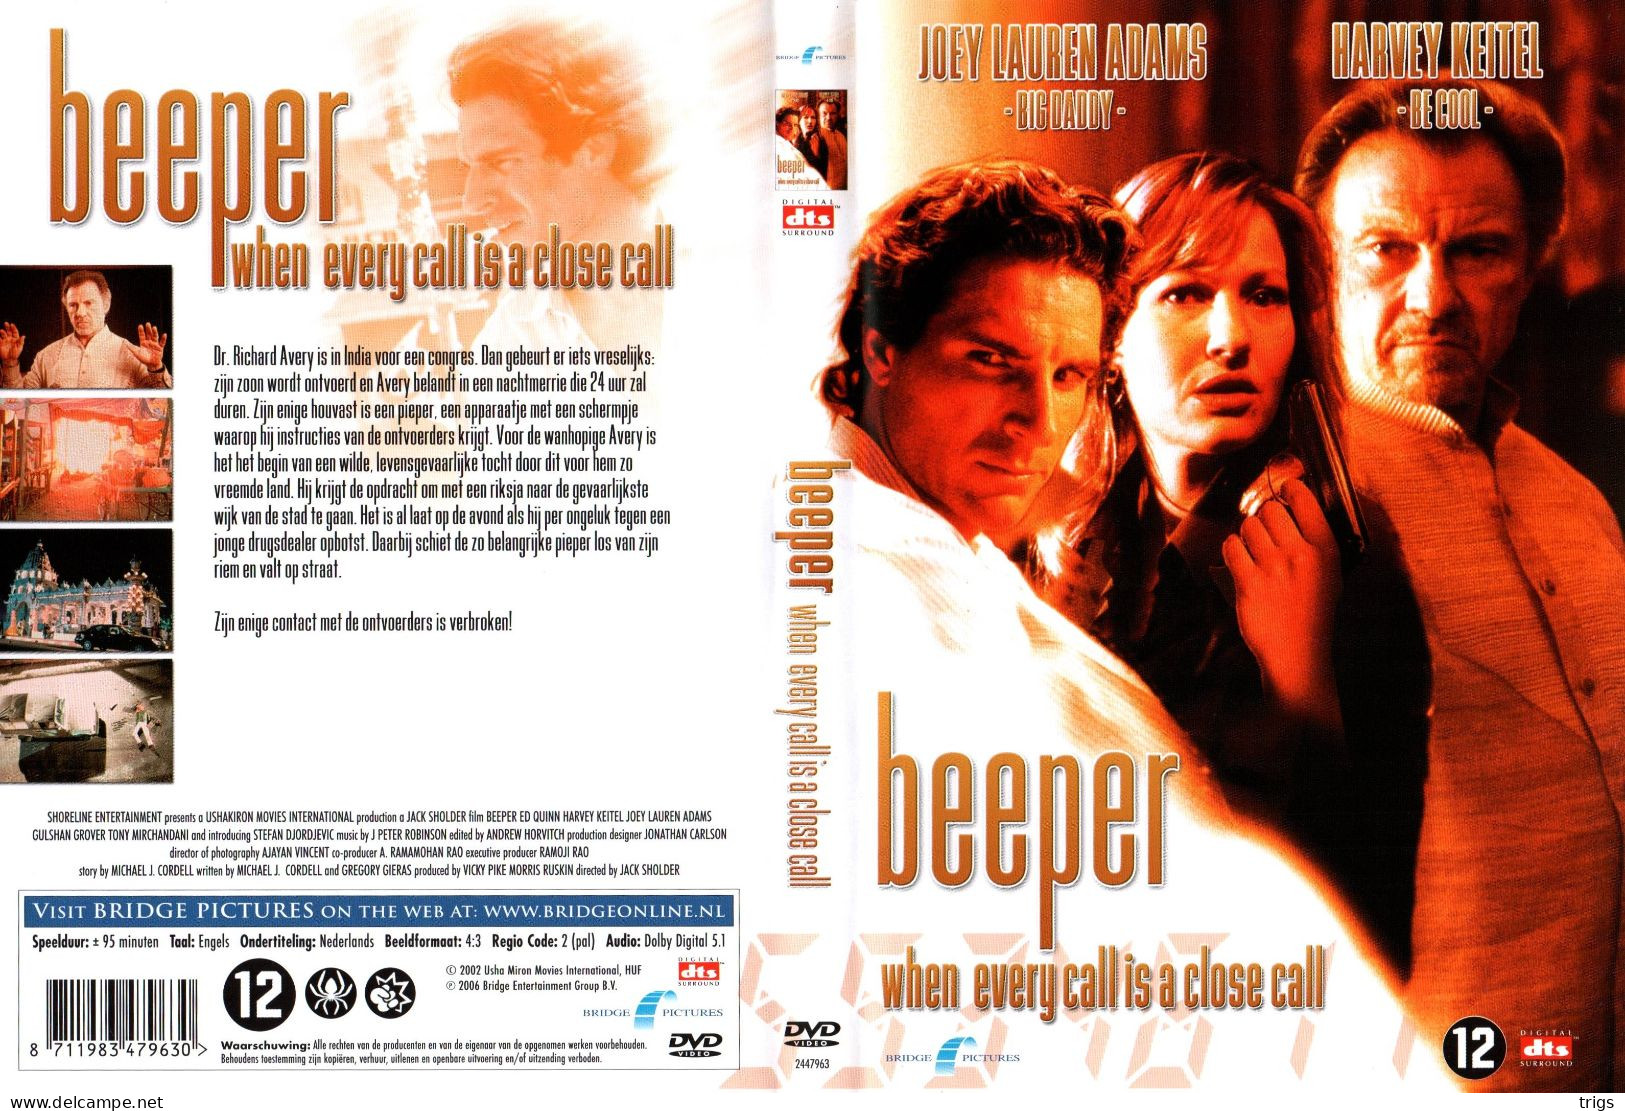 DVD - Beeper - Polizieschi